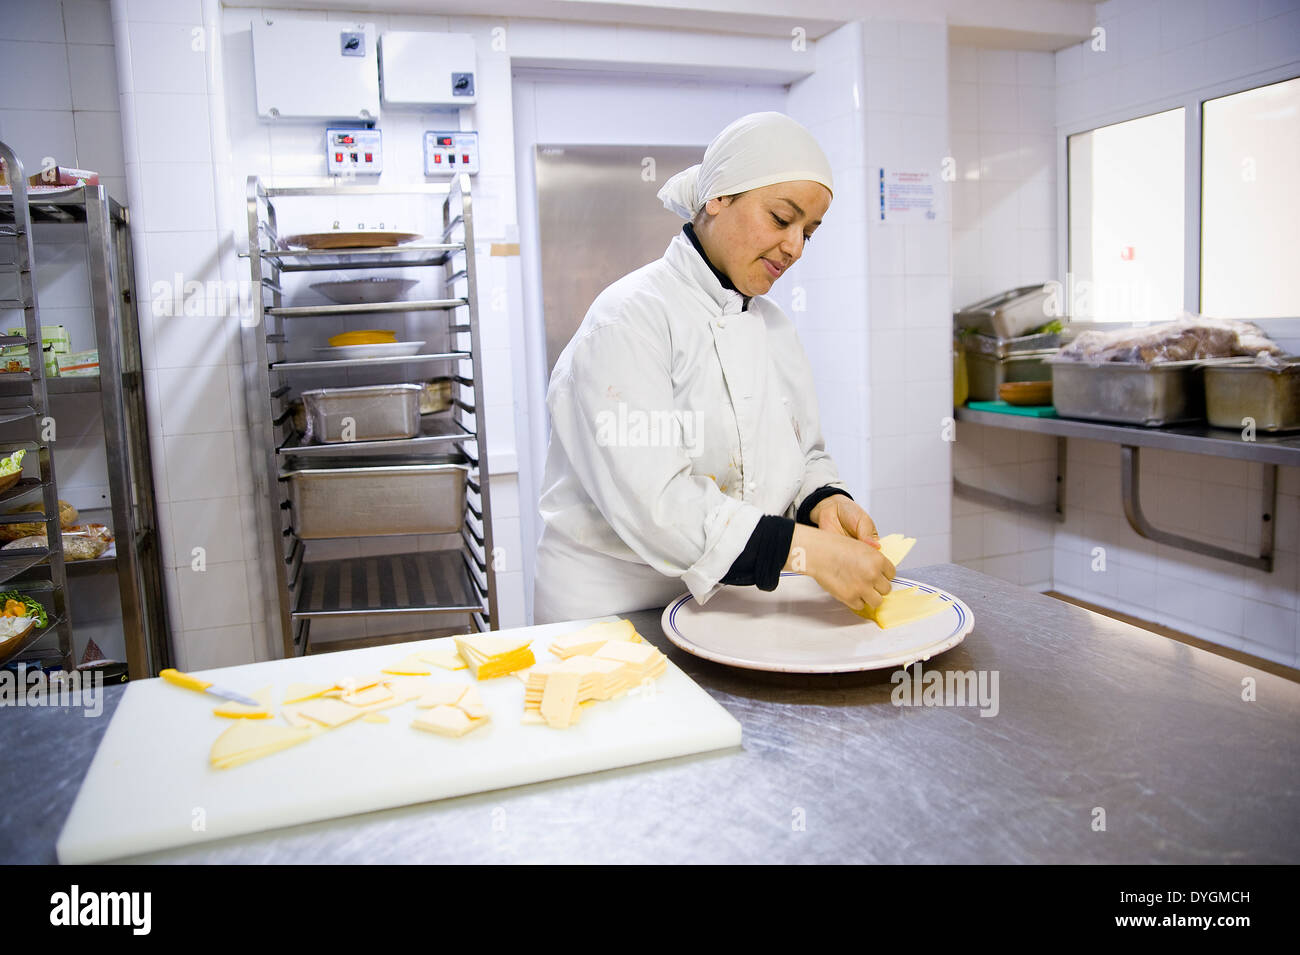 Tunesien, HAMMAMET: Der Tourismus-Branche bietet viele Arbeitsplätze, auch für Frauen. Sie arbeiten auf allen Ebenen, wie sie in der Küche. Stockfoto